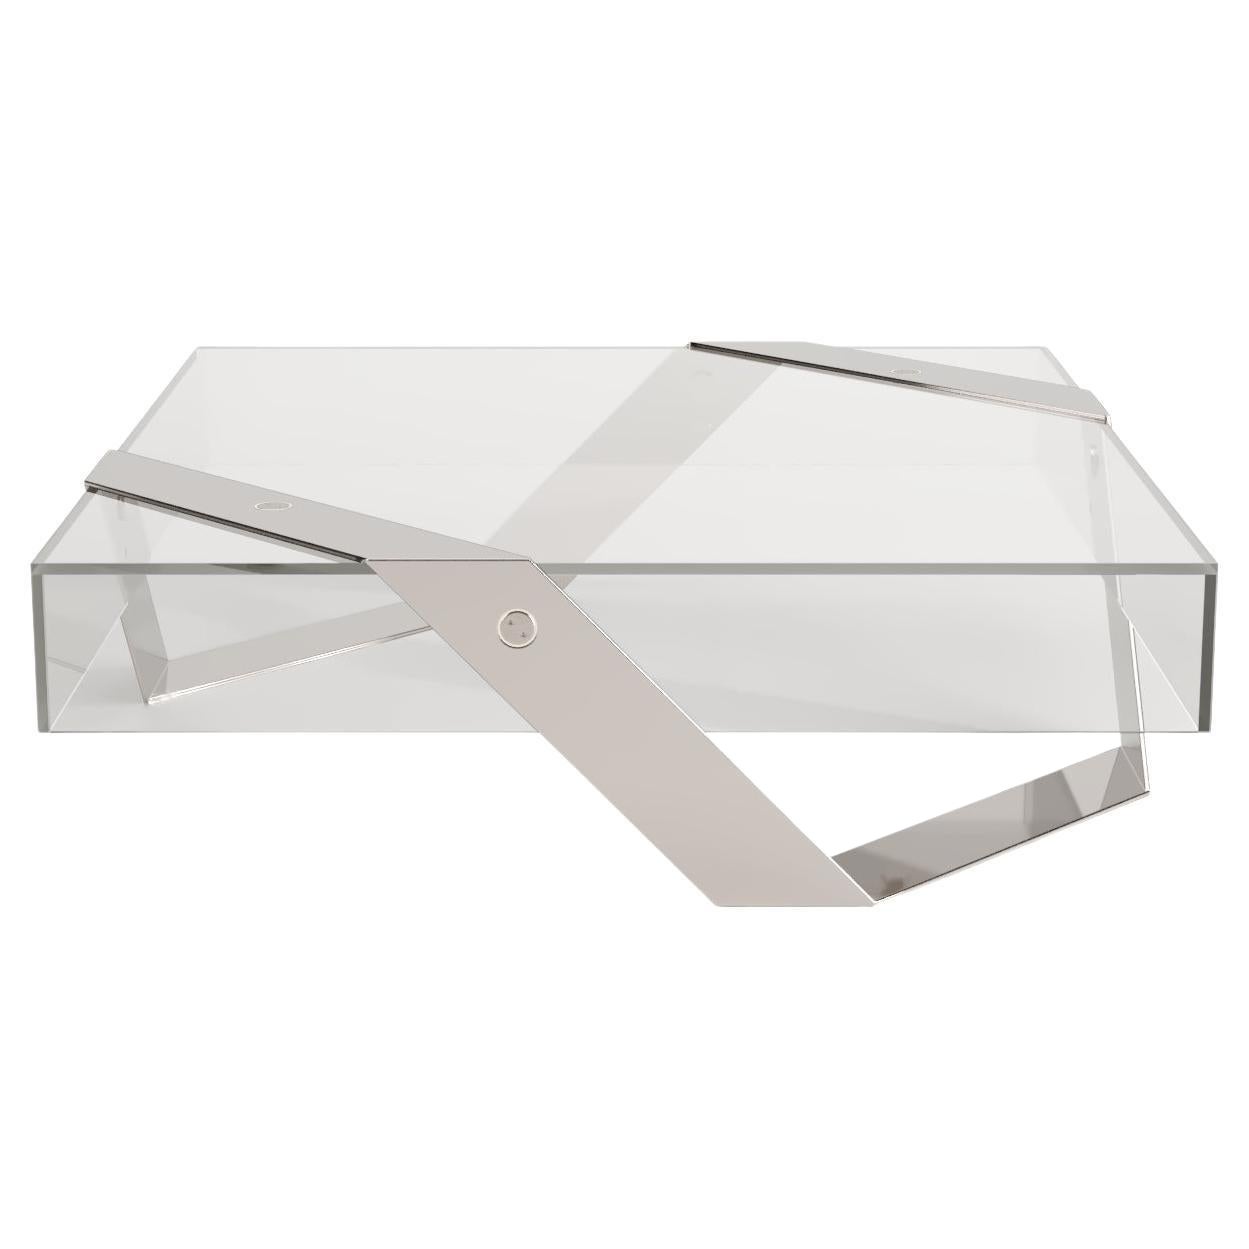 Tavolino moderno minimalista quadrato centrale in vetro e acciaio inossidabile lucido in vendita